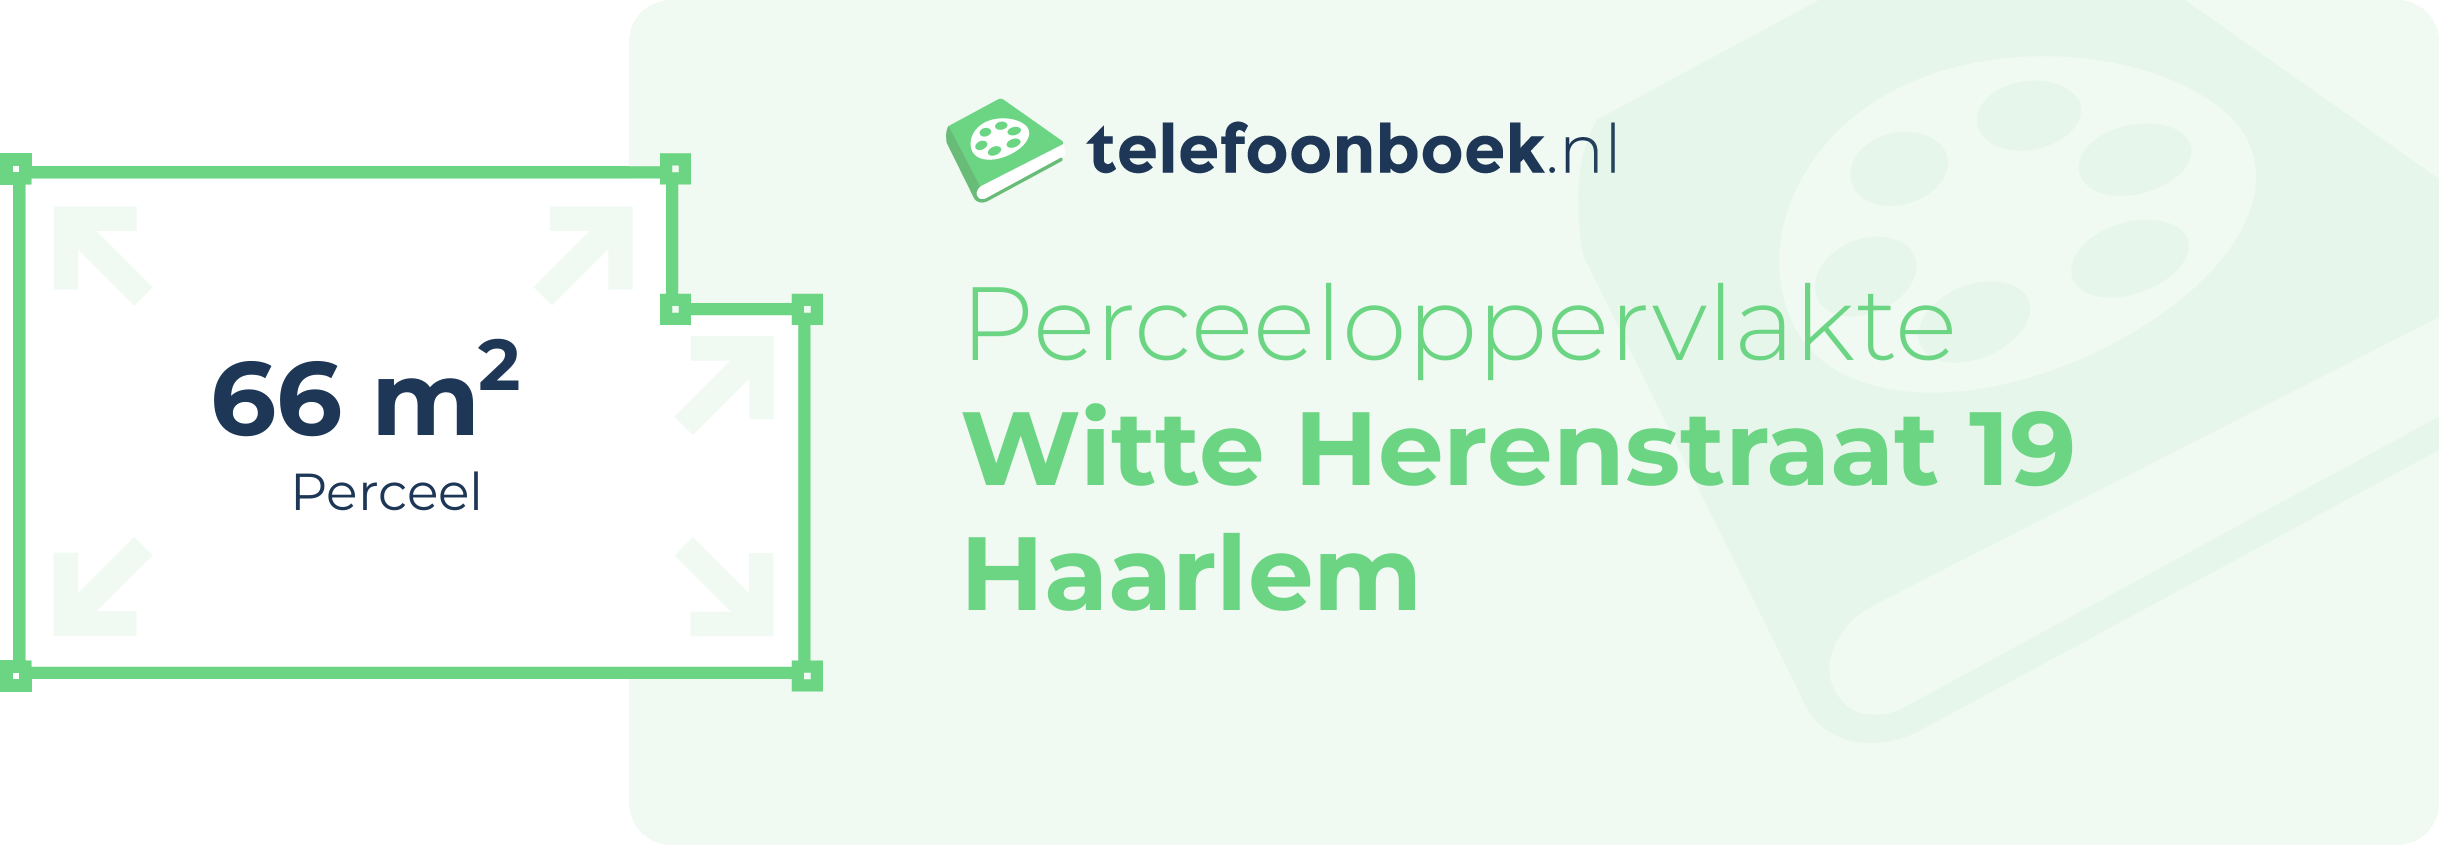 Perceeloppervlakte Witte Herenstraat 19 Haarlem